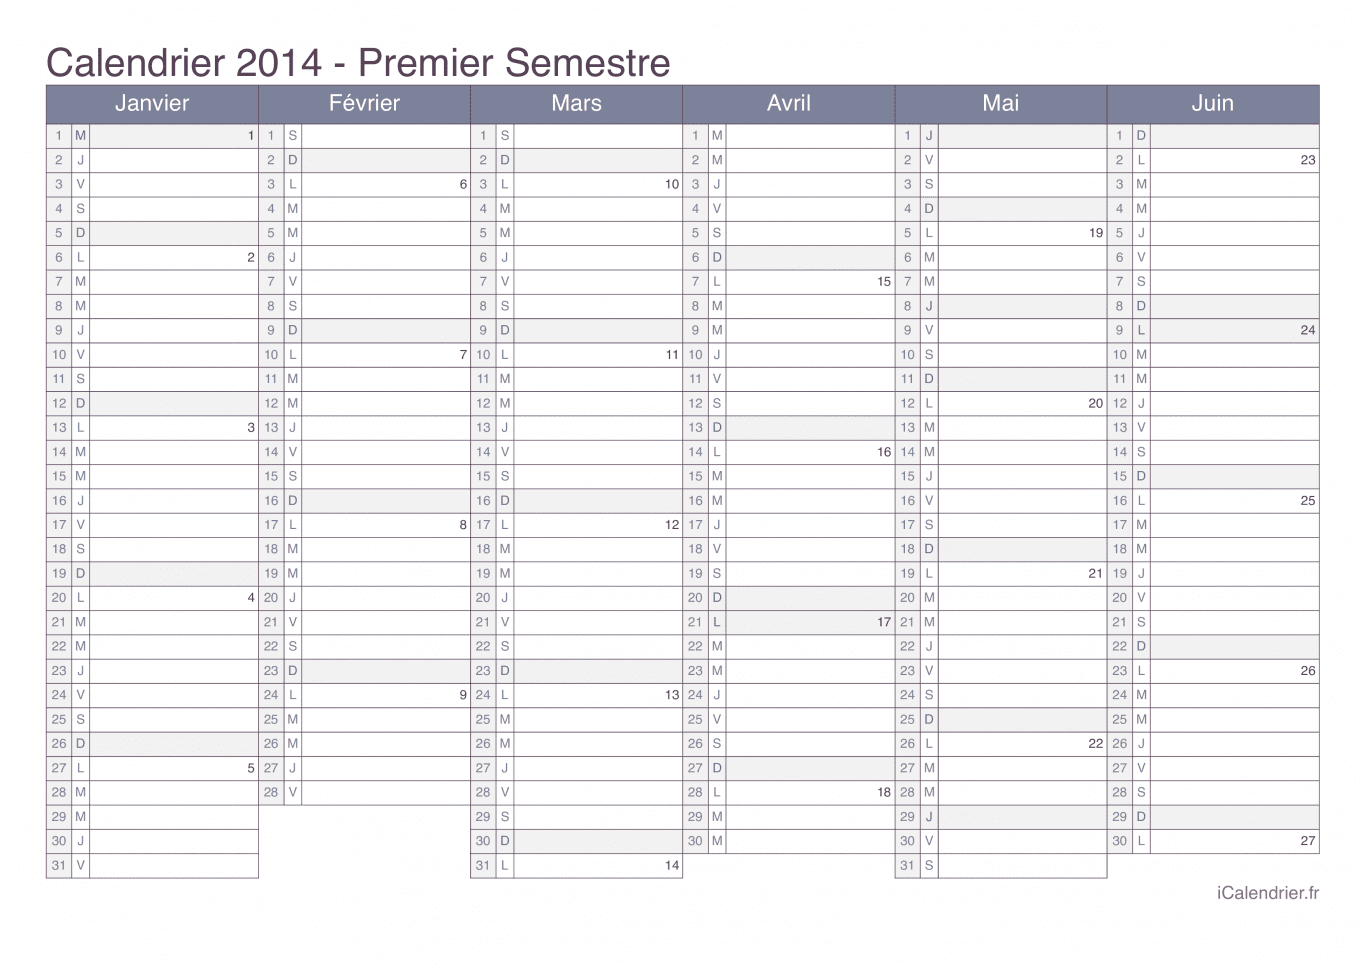 Calendrier par semestre avec numéros des semaines 2014 - Office